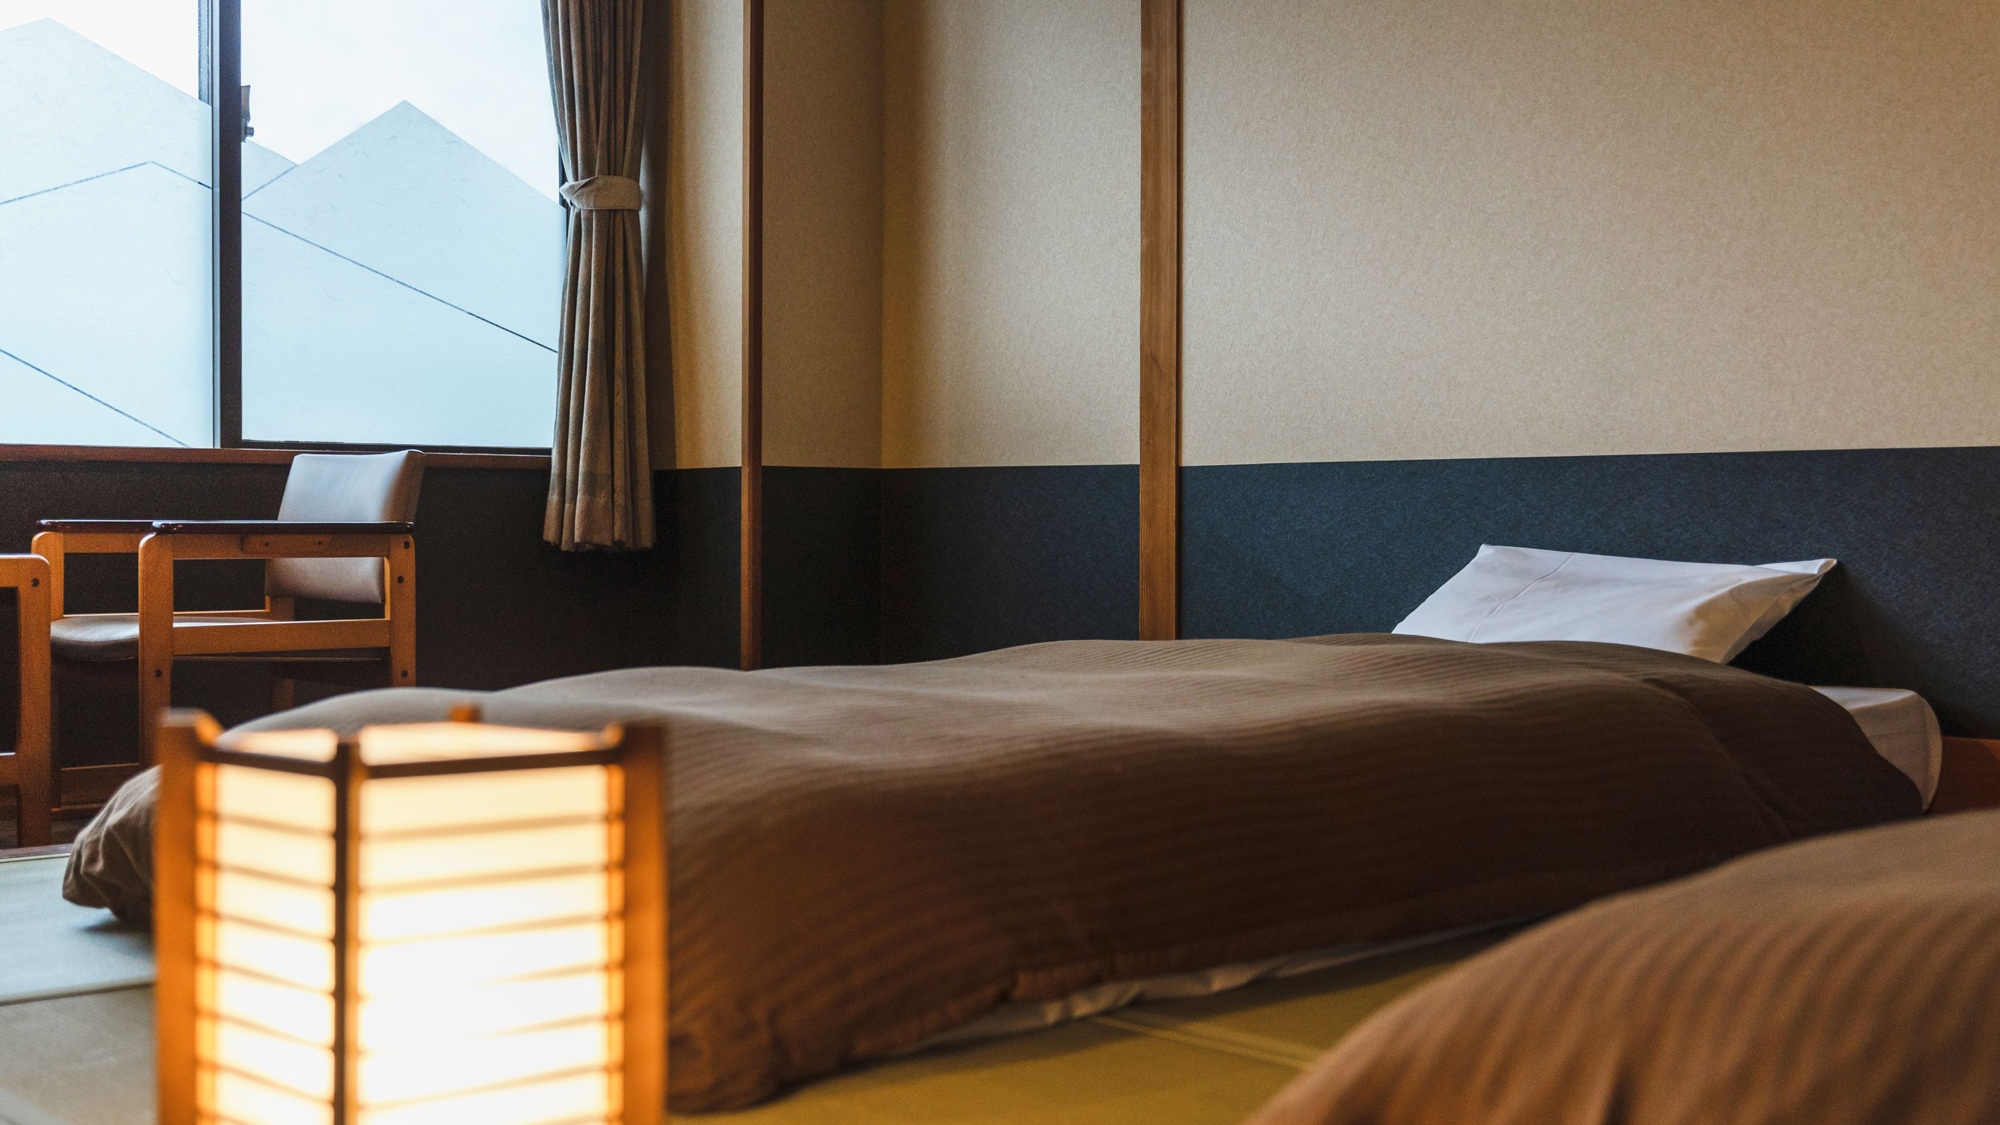 【~여행 클럽~일본식 방 침대・38㎡】 차분한 일본식 공간에서 편히 쉬다